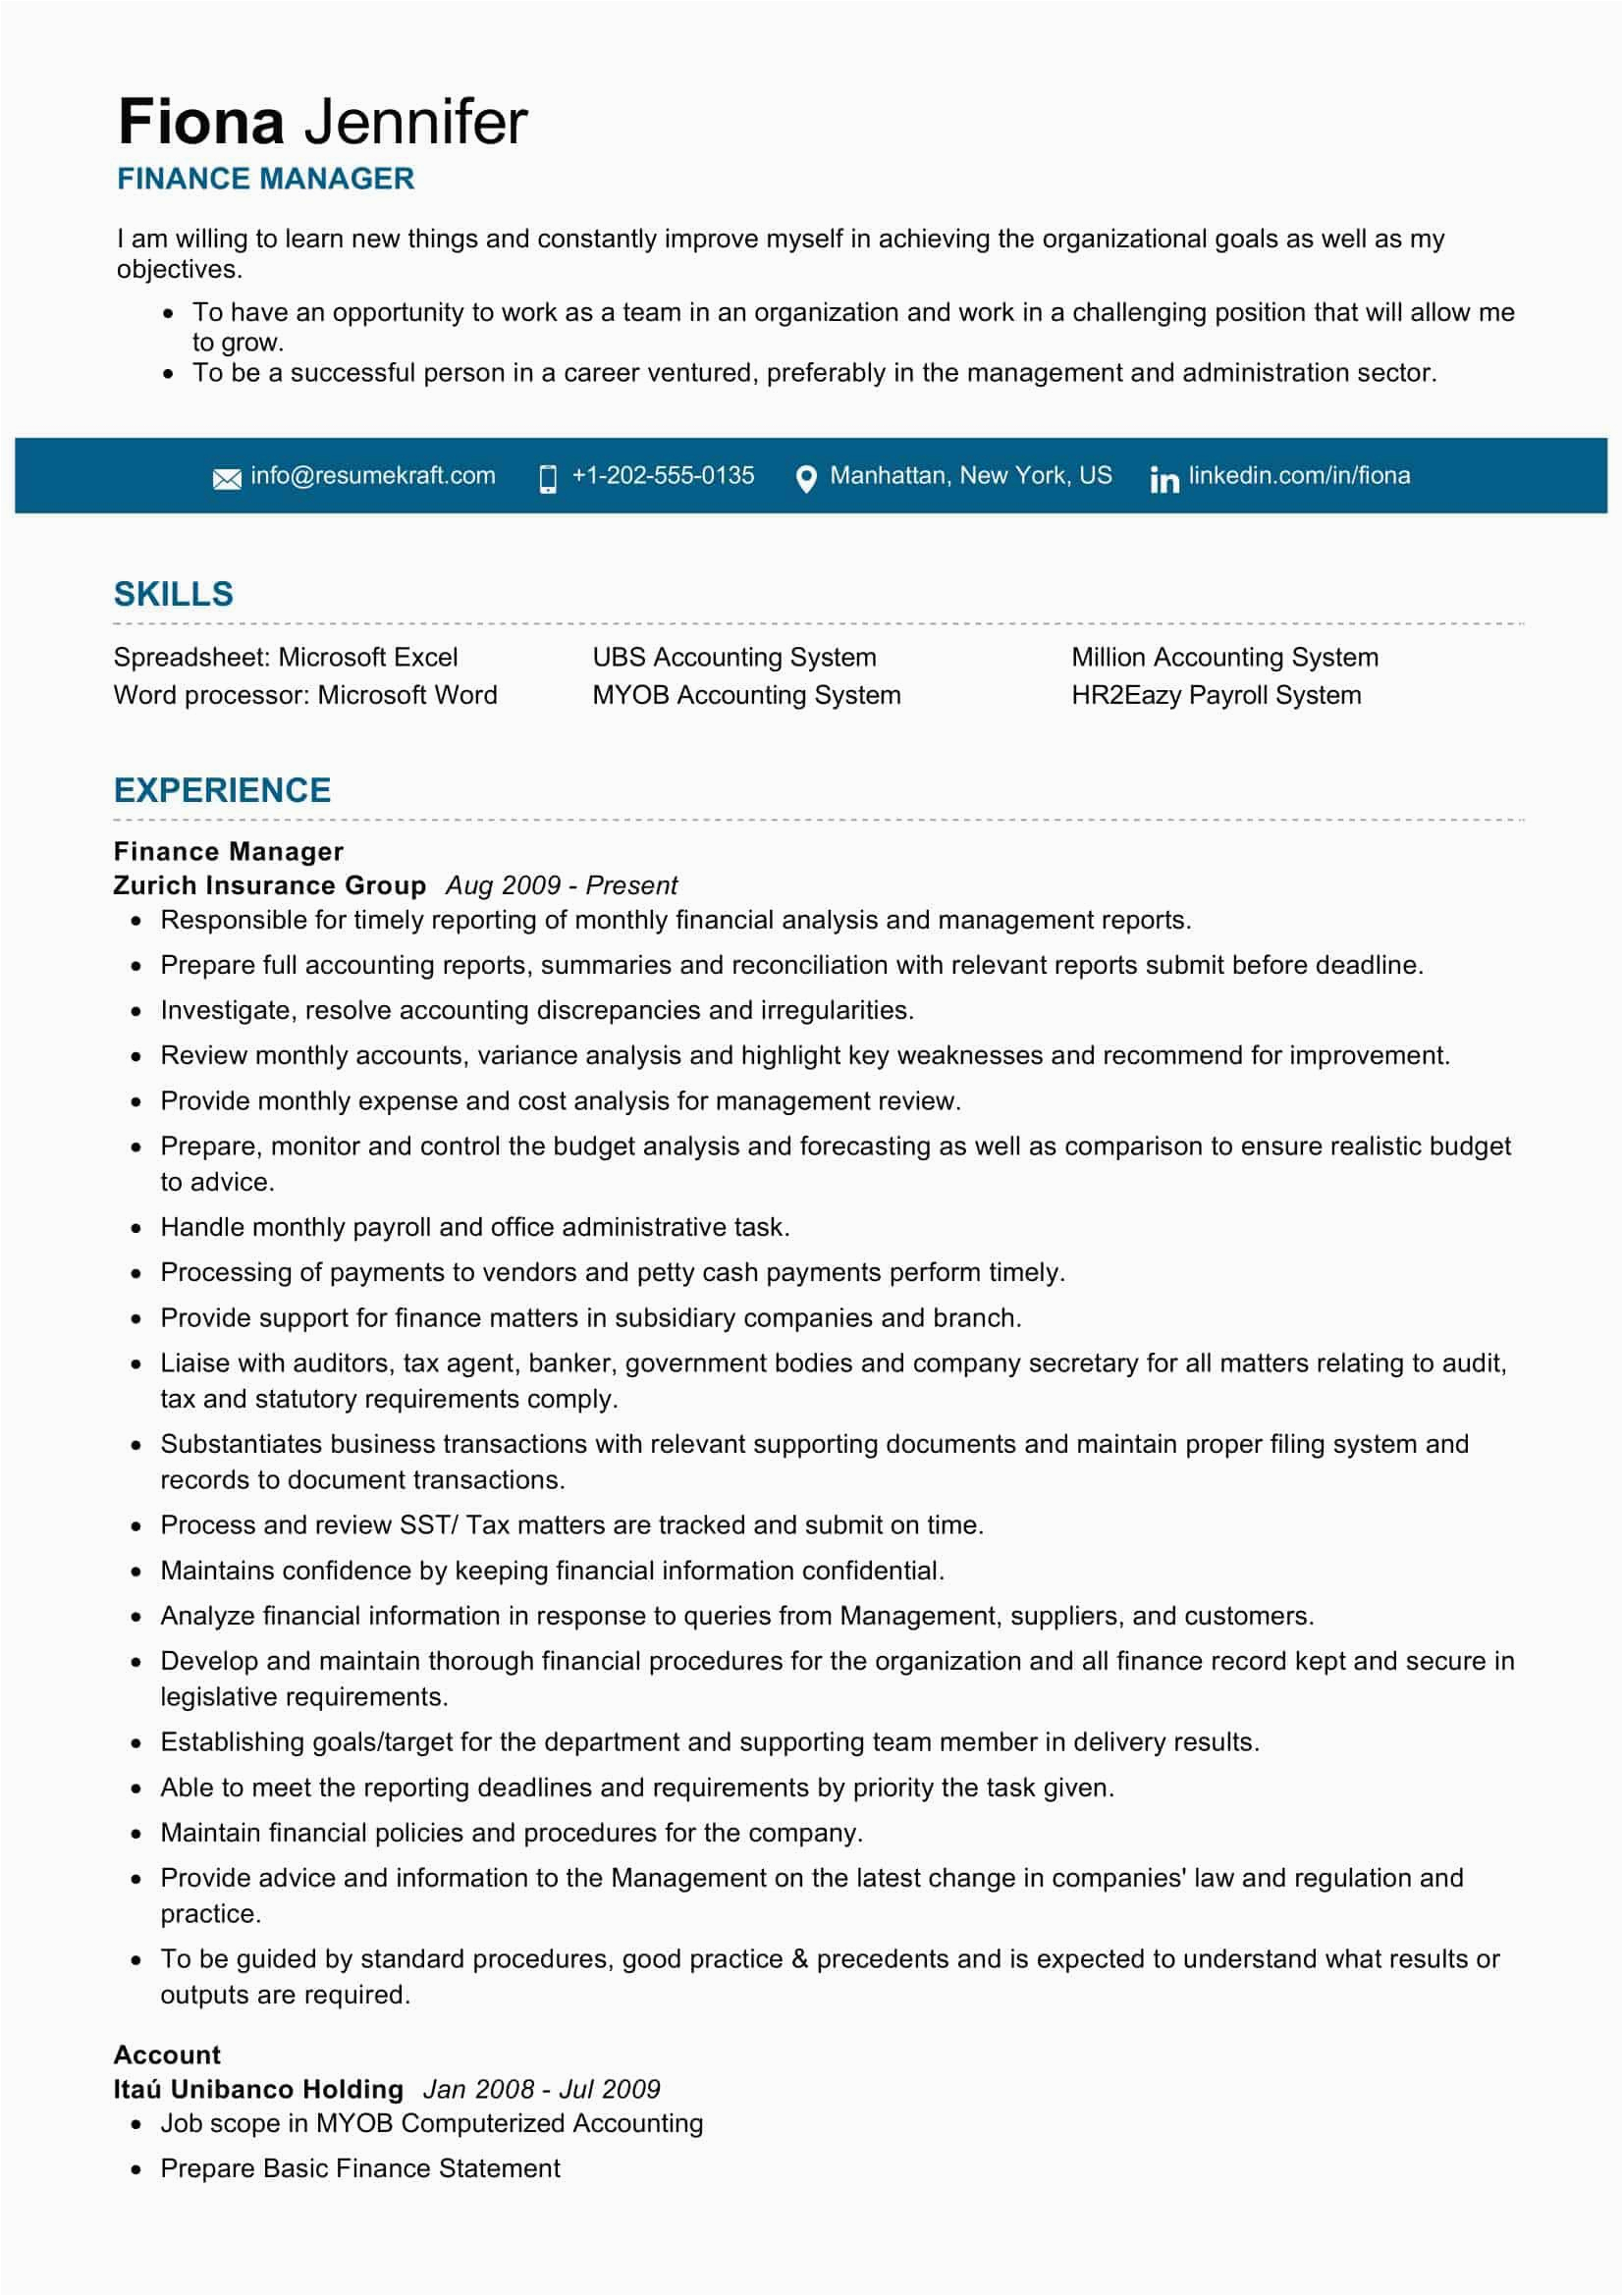 Sample Resume for Financial Management Position Finance Manager Resume Sample 2021